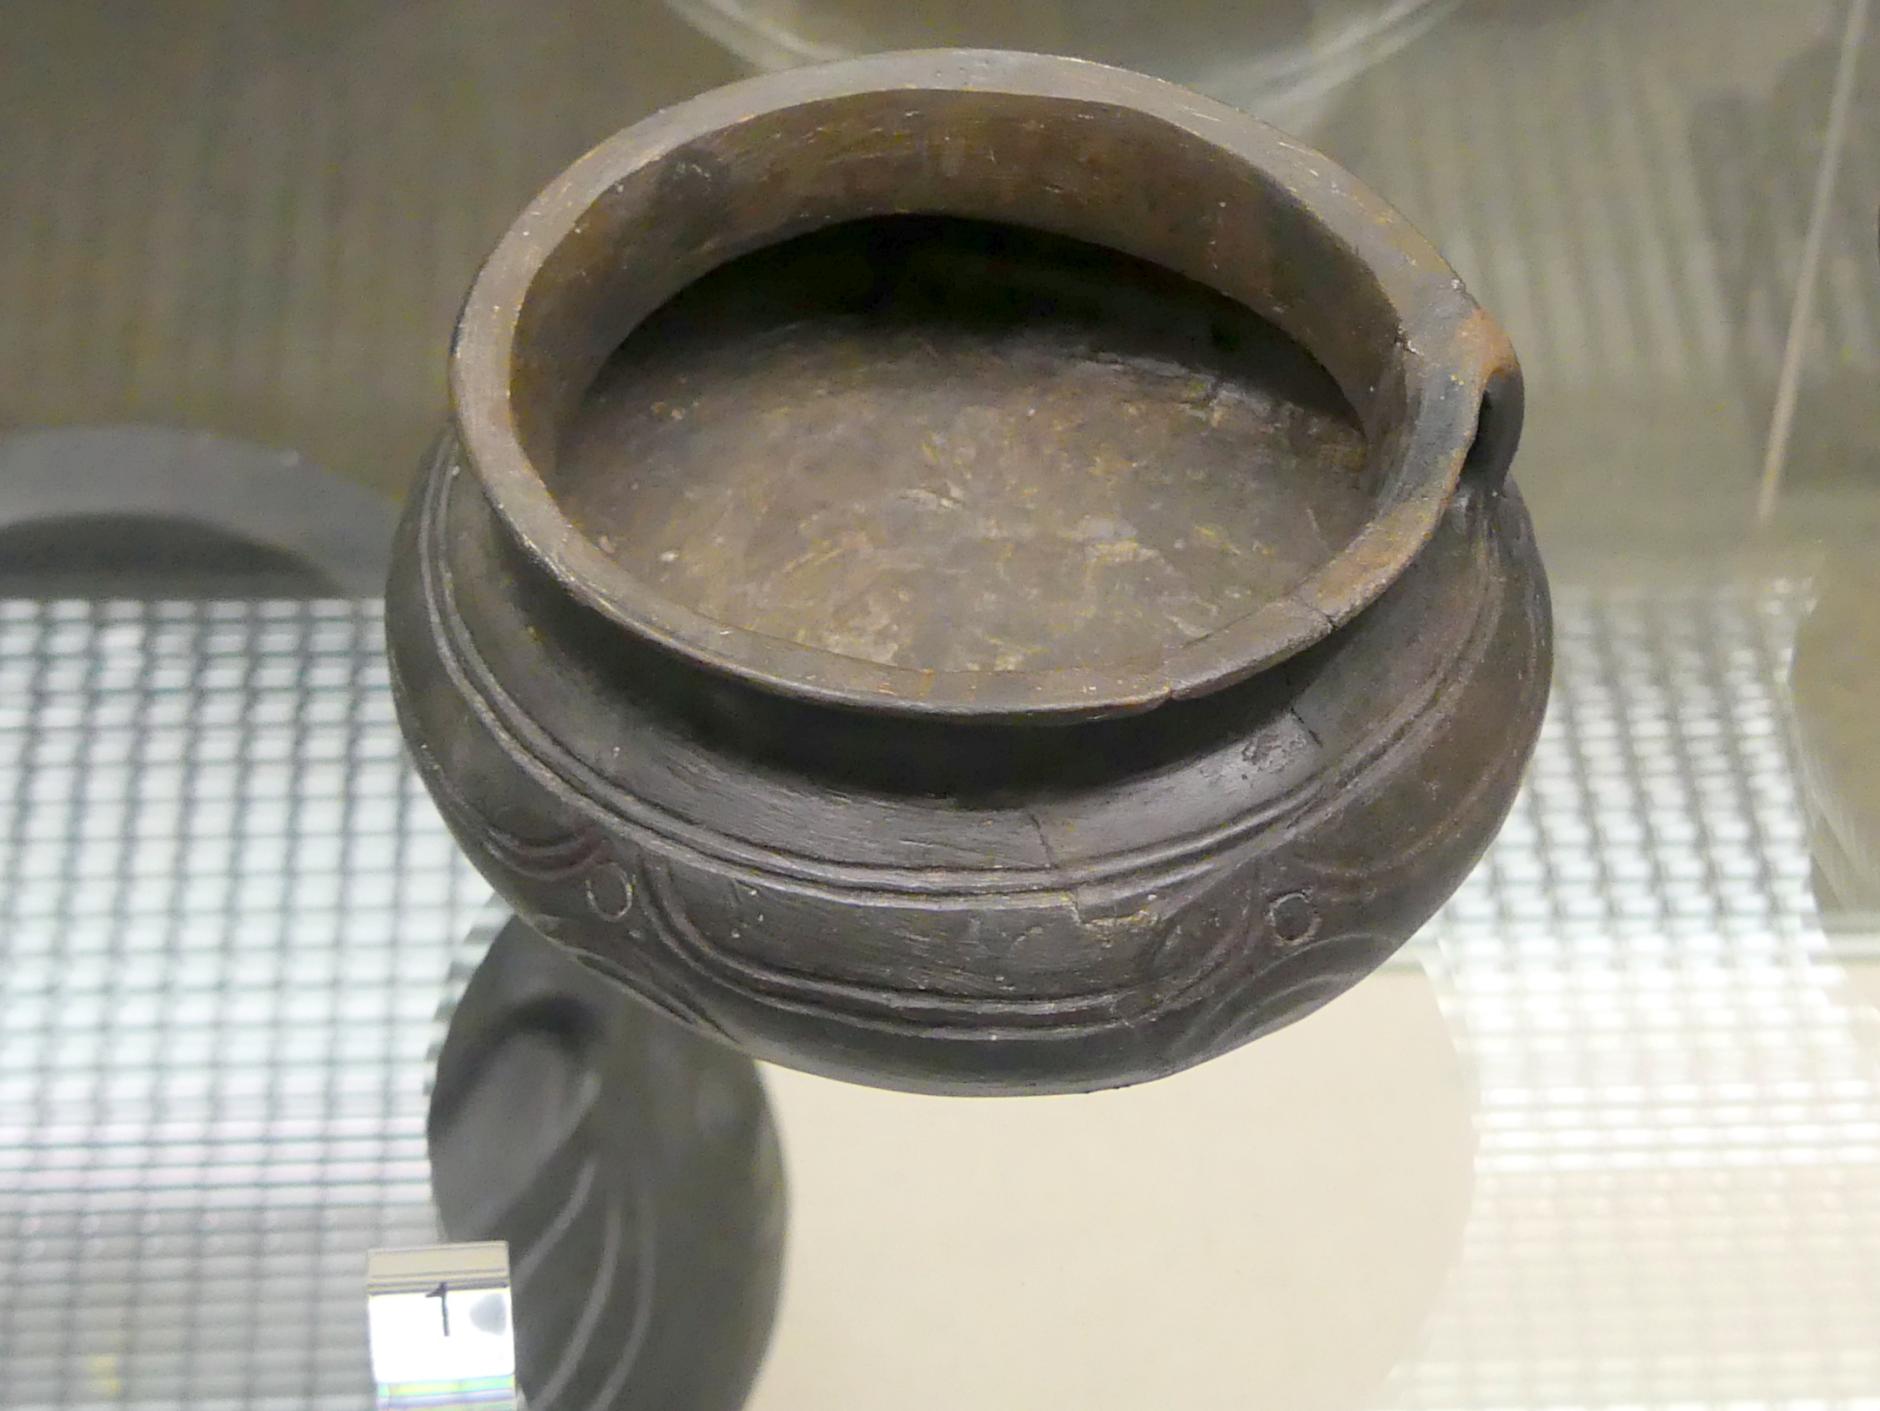 Trichterhalsgefäß, Urnenfelderzeit, 1400 - 700 v. Chr., Bild 1/2